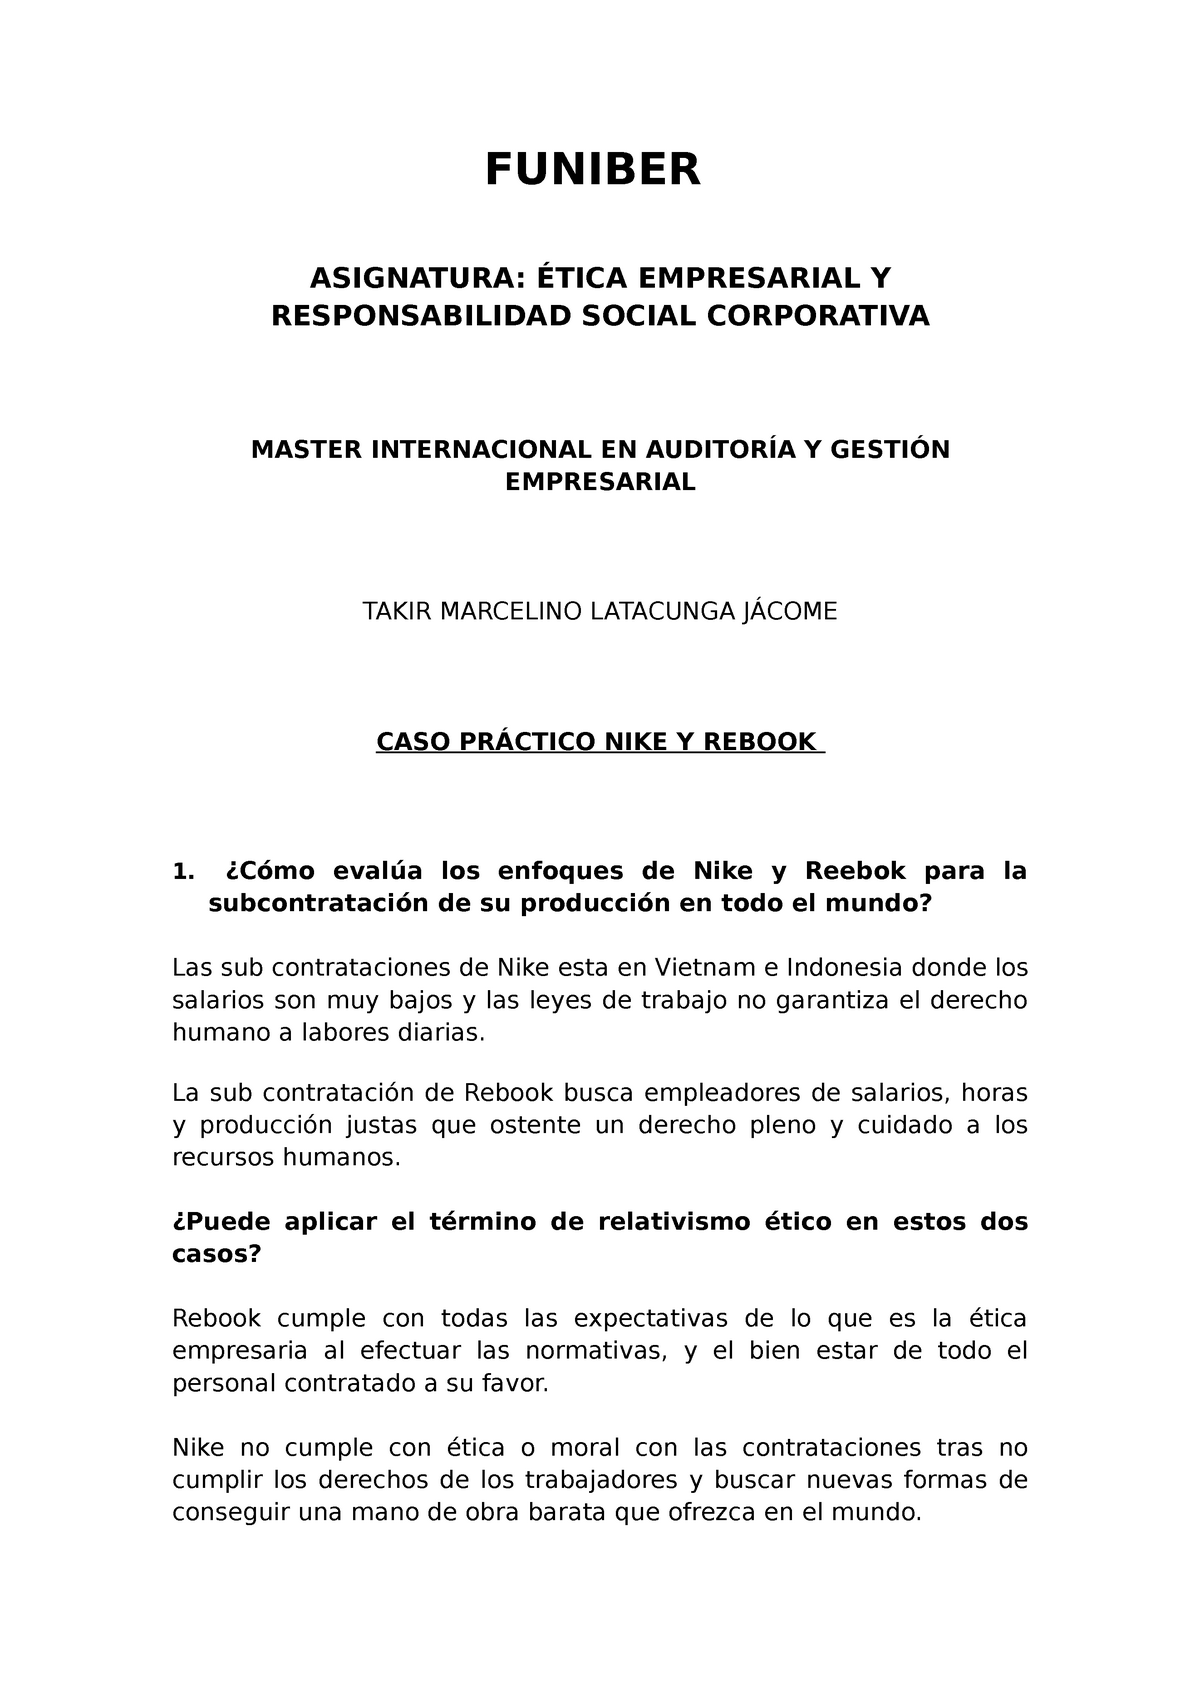 CASO NIKE Y Rebook - CASOS PRACTICOS FUNIBER ASIGNATURA: ÉTICA EMPRESARIAL Y RESPONSABILIDAD - Studocu